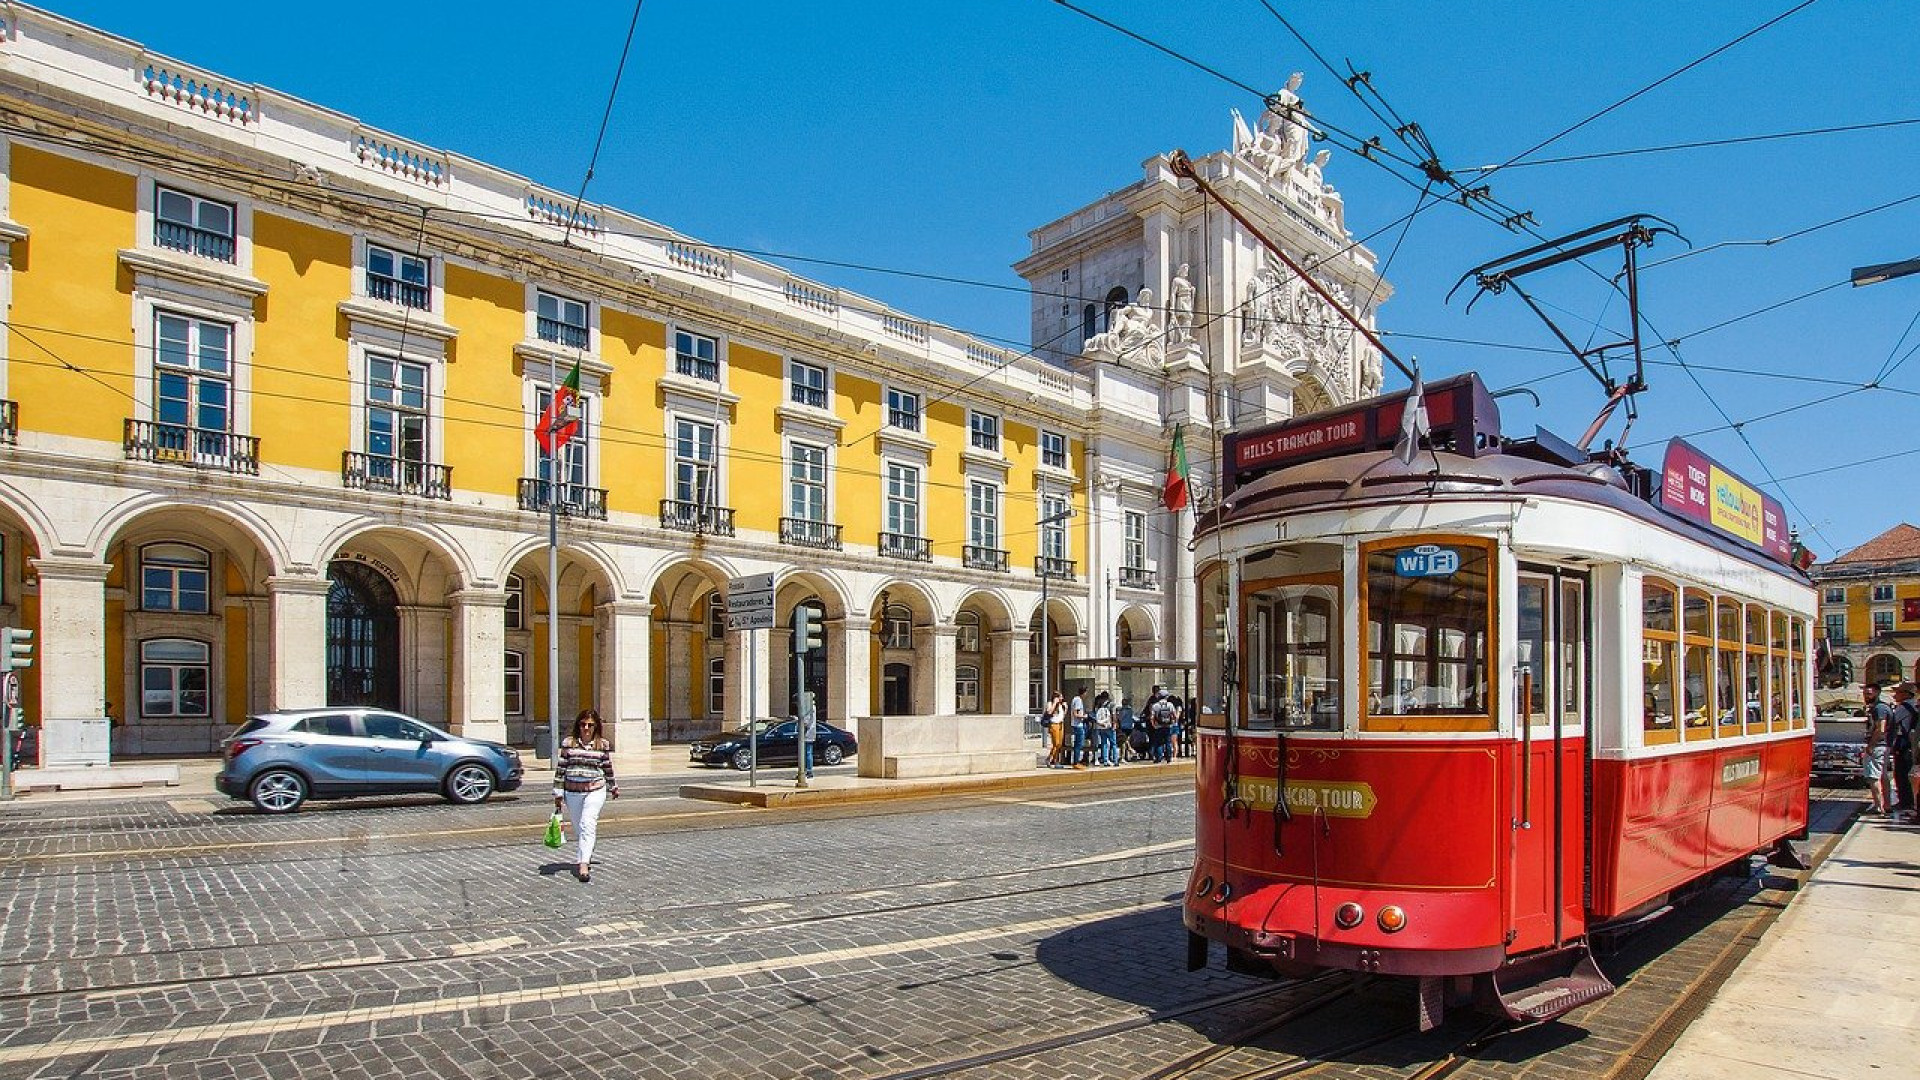 Vacances au Portugal : Top 3 des activités à faire